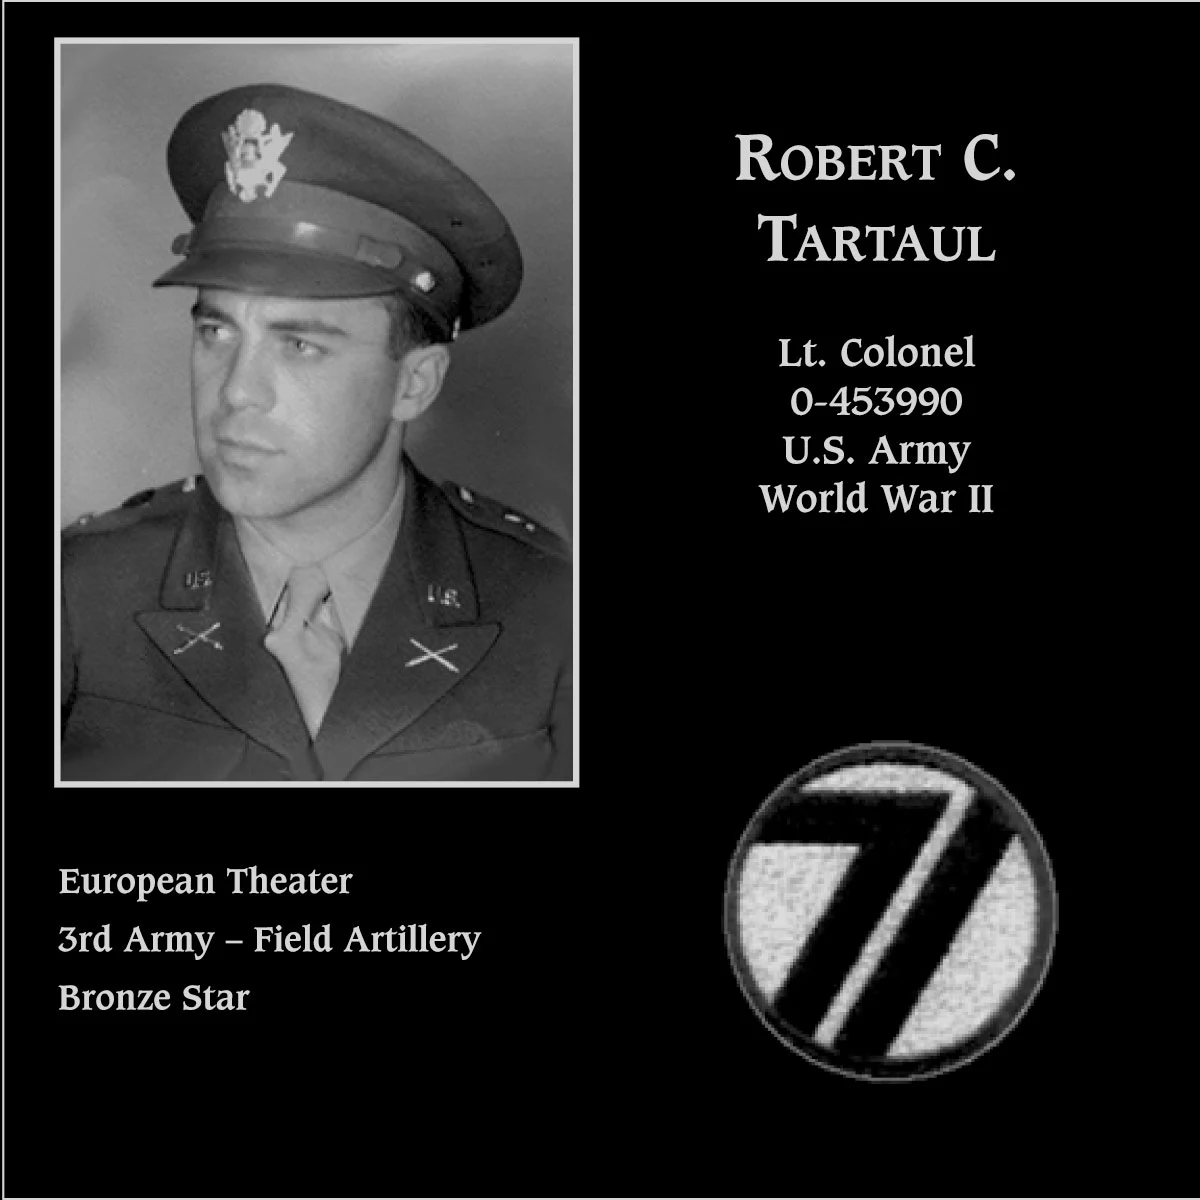 Robert C. Tartaul